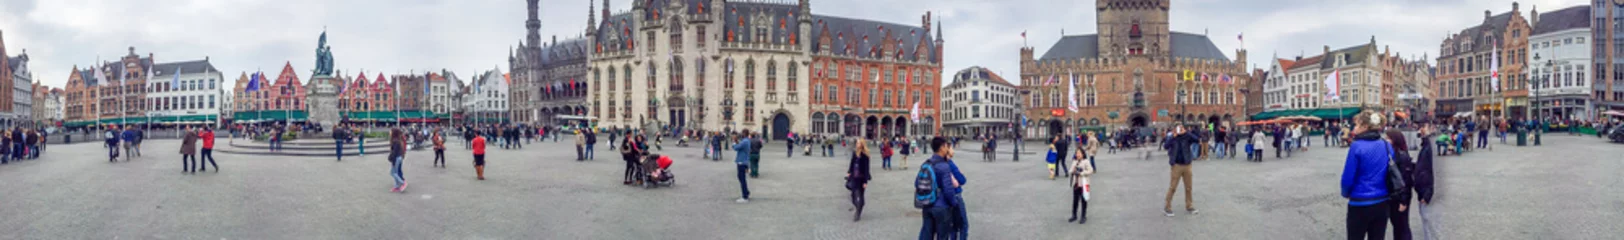 Fototapeten Brügge, Belgien - Mai 2015: Touristen entlang der Straßen der Stadt. Die Stadt ist eine berühmte Sehenswürdigkeit in Belgien © jovannig